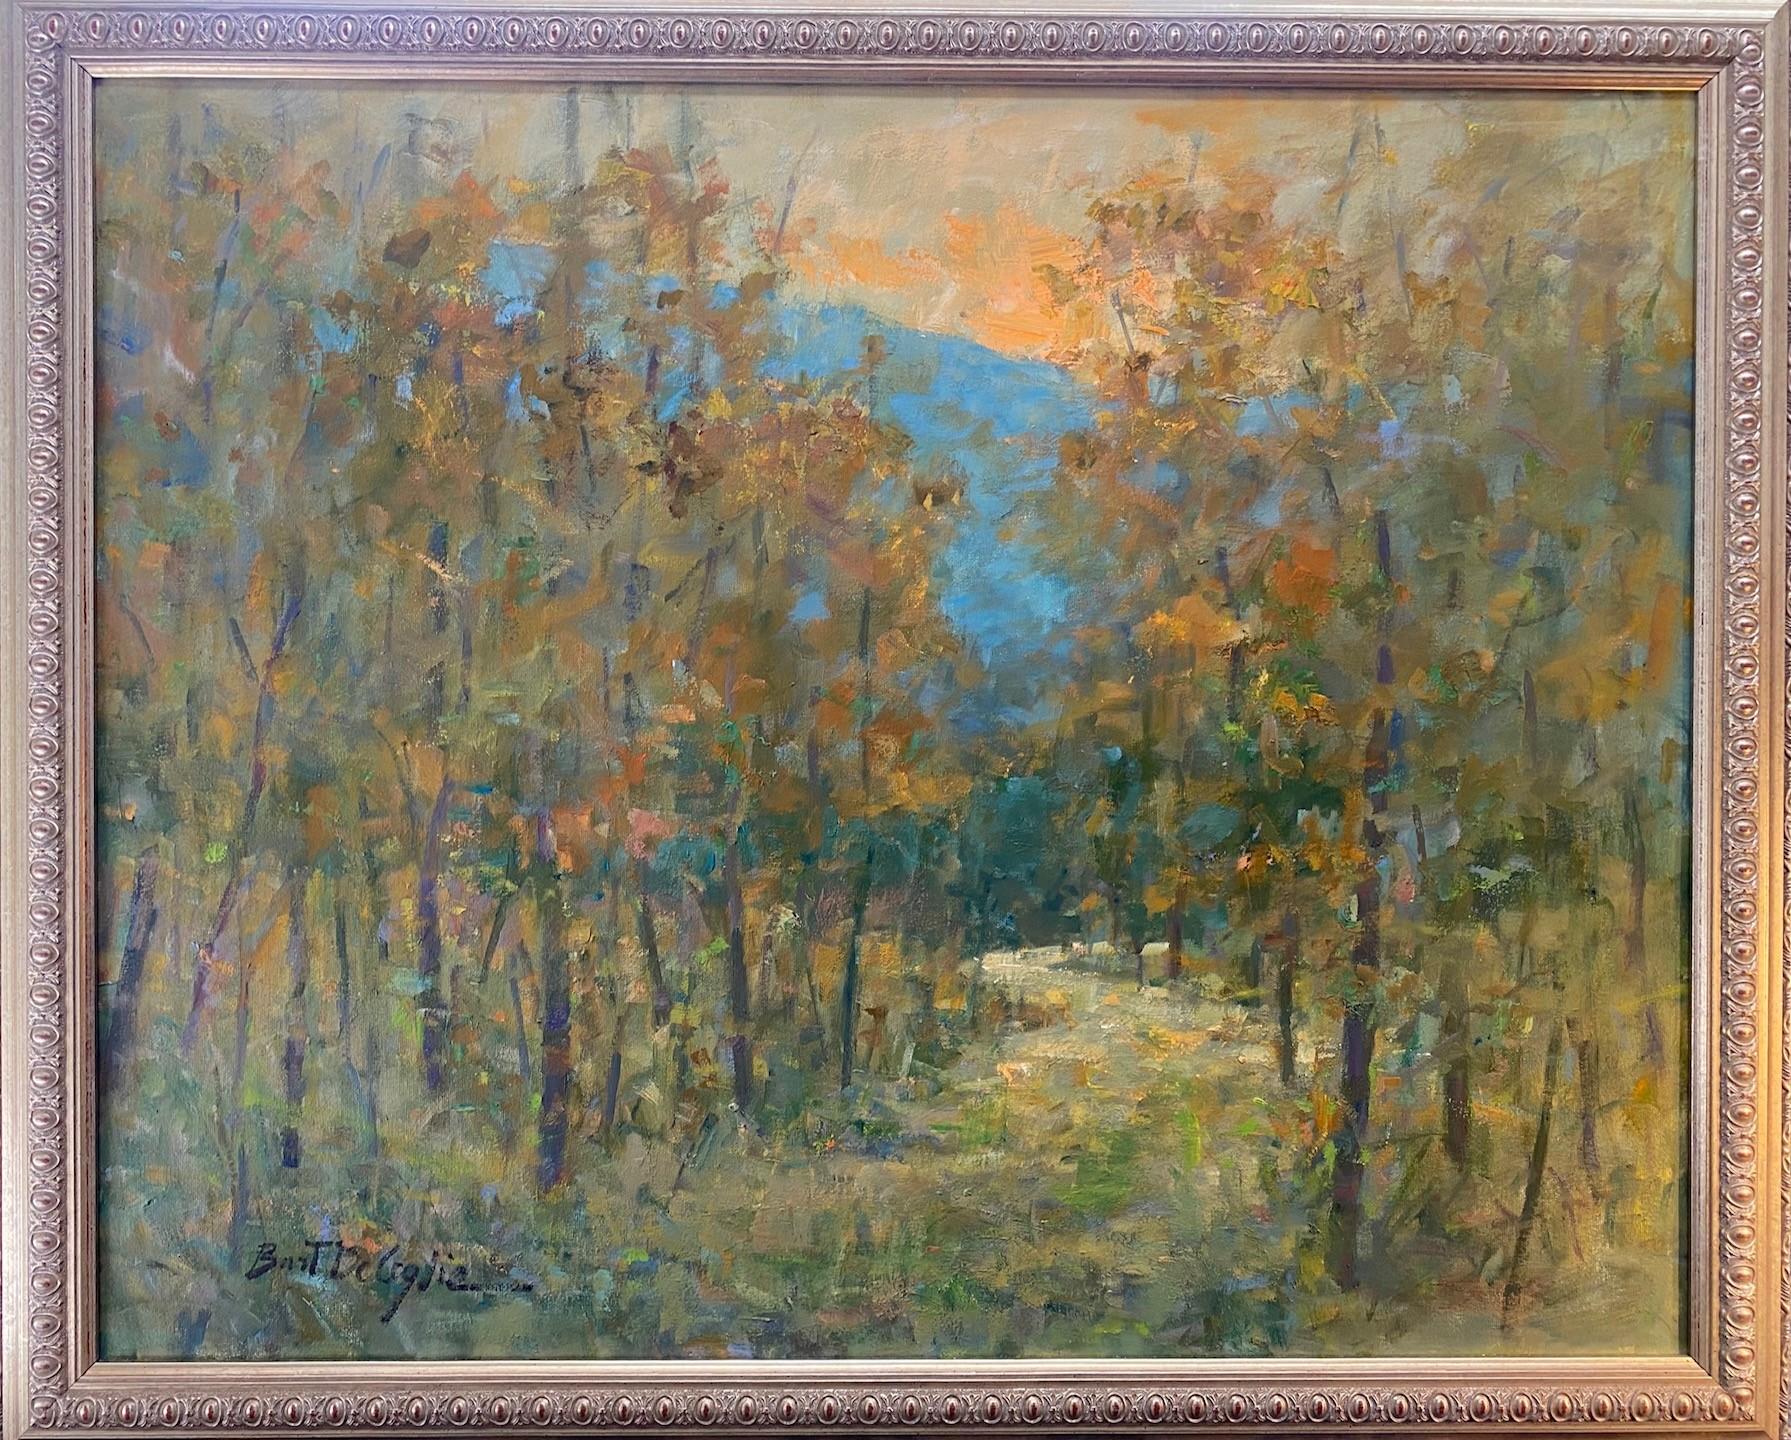 Bart DeCeglie Landscape Painting - Fall Lights, original 24x30 impressionist autumn landscape